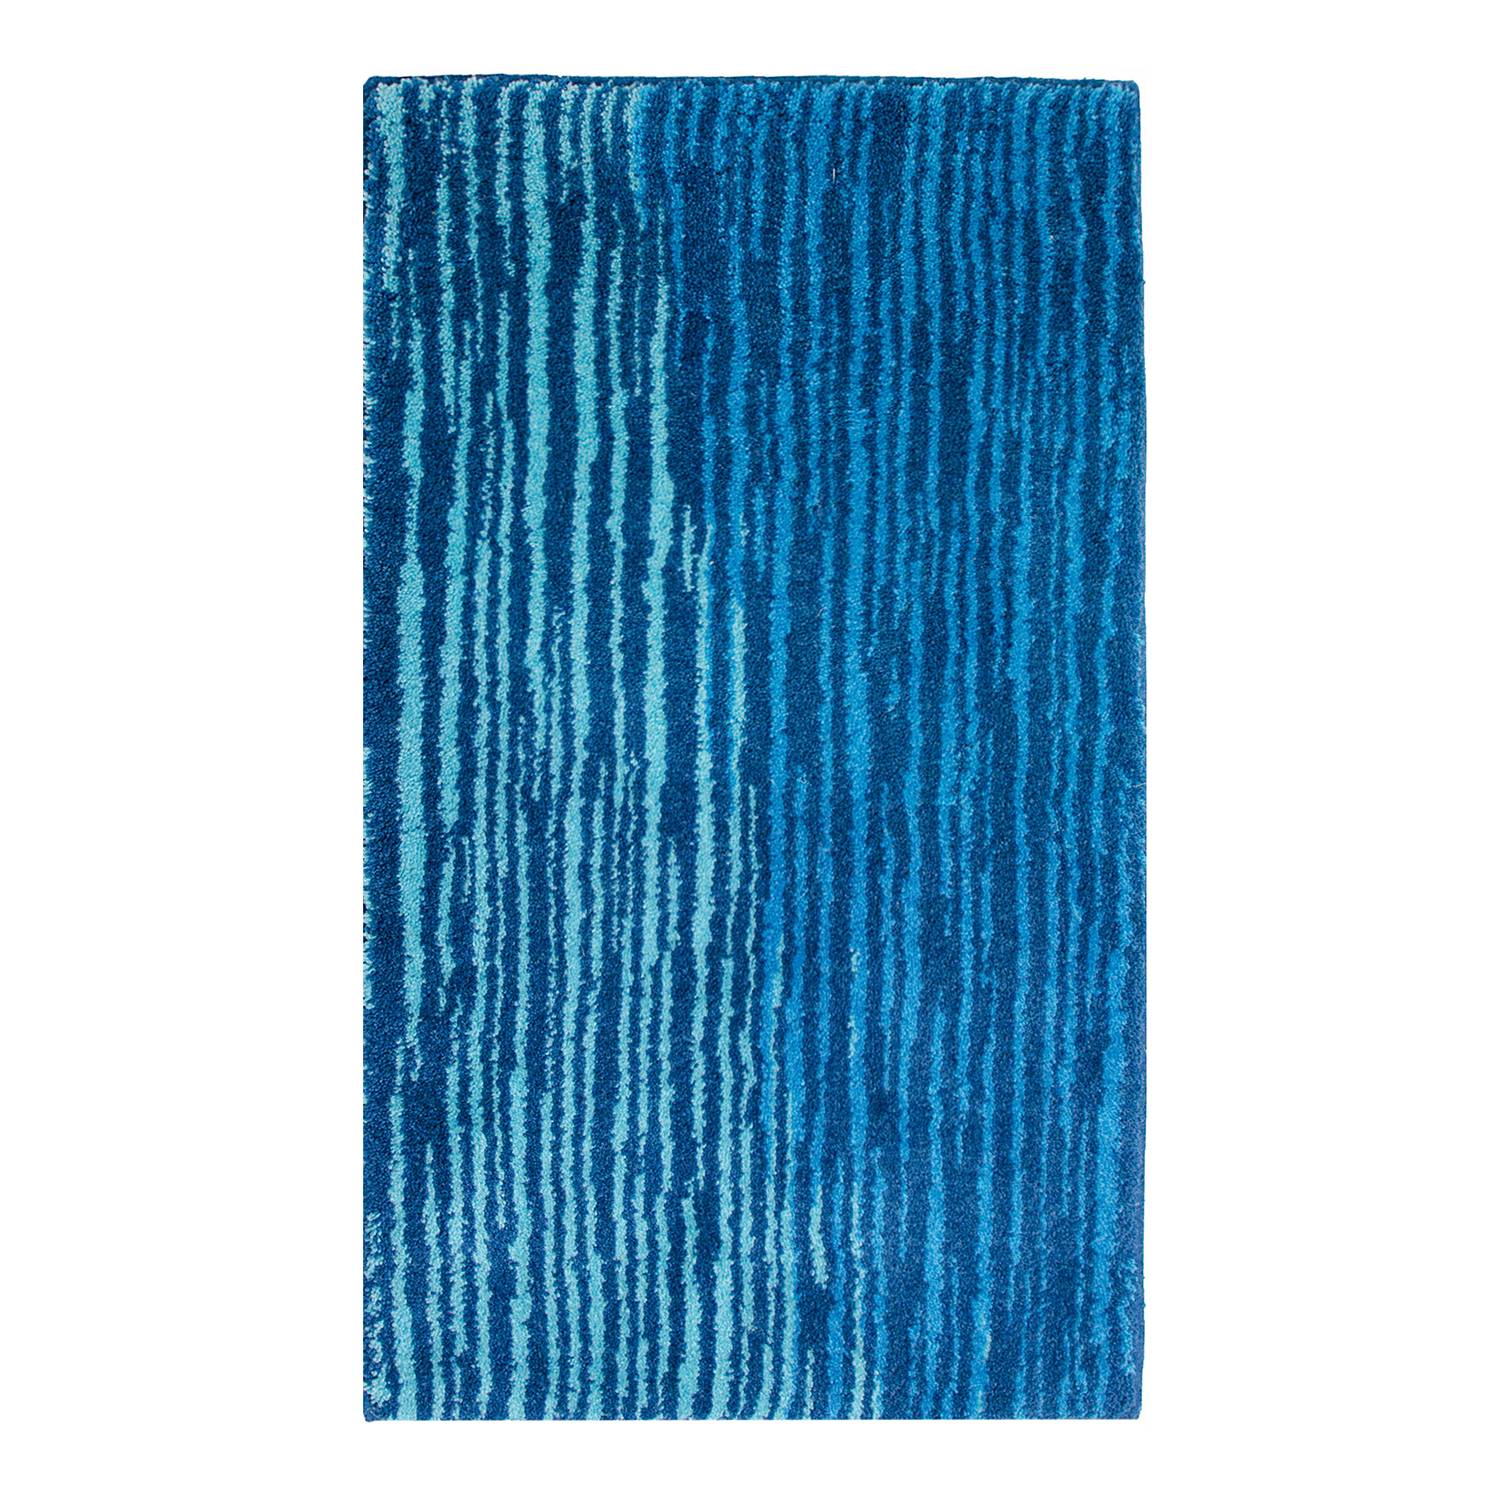 Badematte Mauritius II - Blau - 60 x 60 cm, SchÃ¶ner Wohnen Kollektion